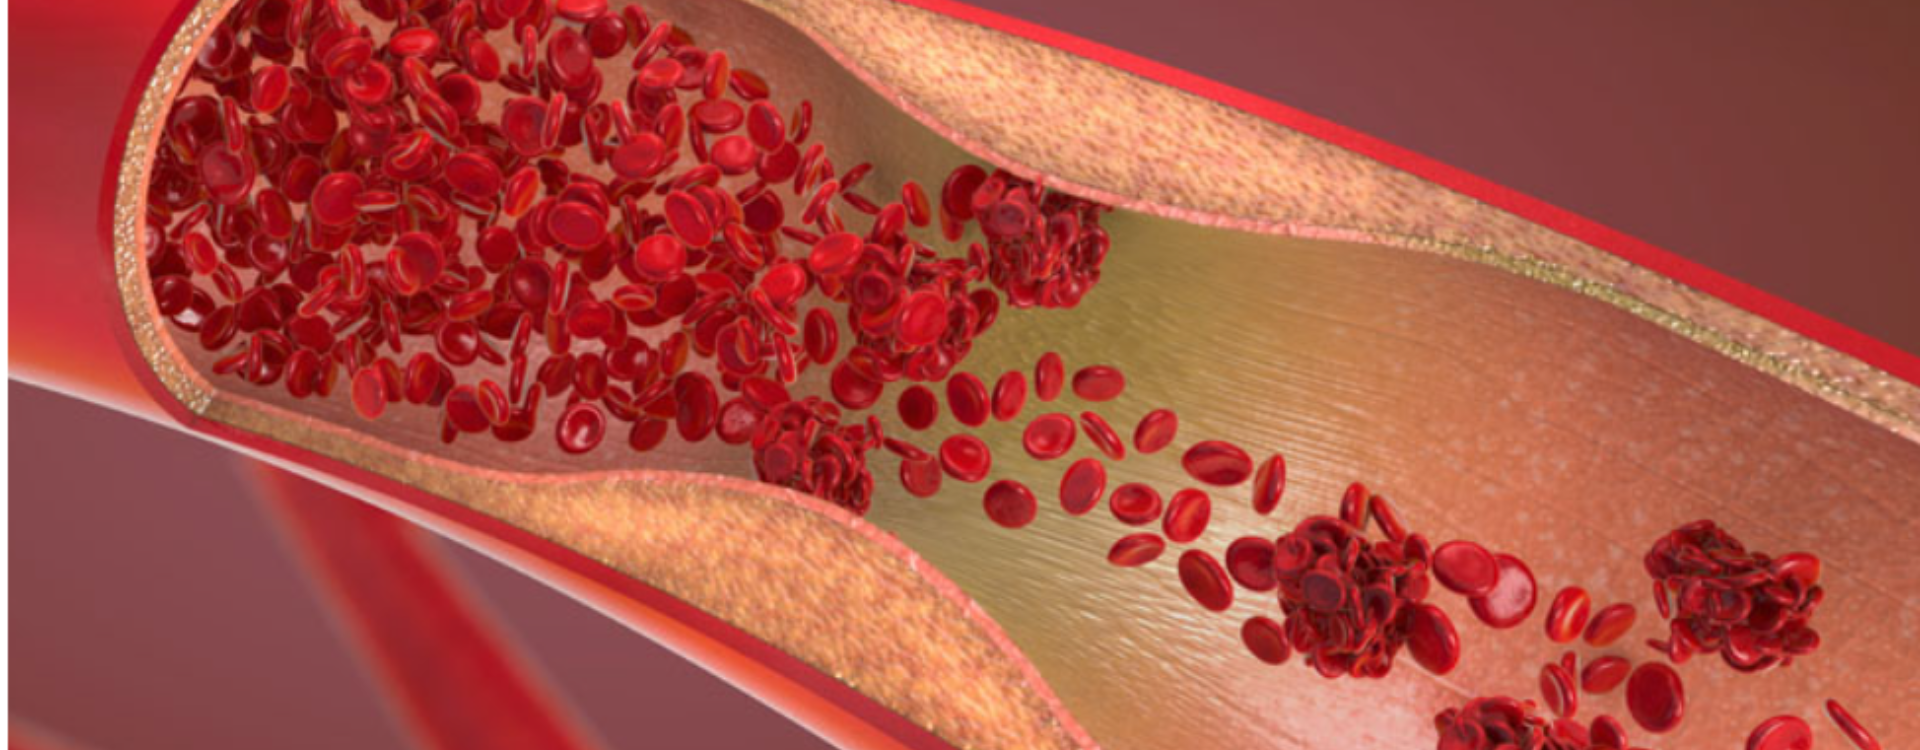 LipiForma Bergamia - zawalcz o prawidłowy cholesterol